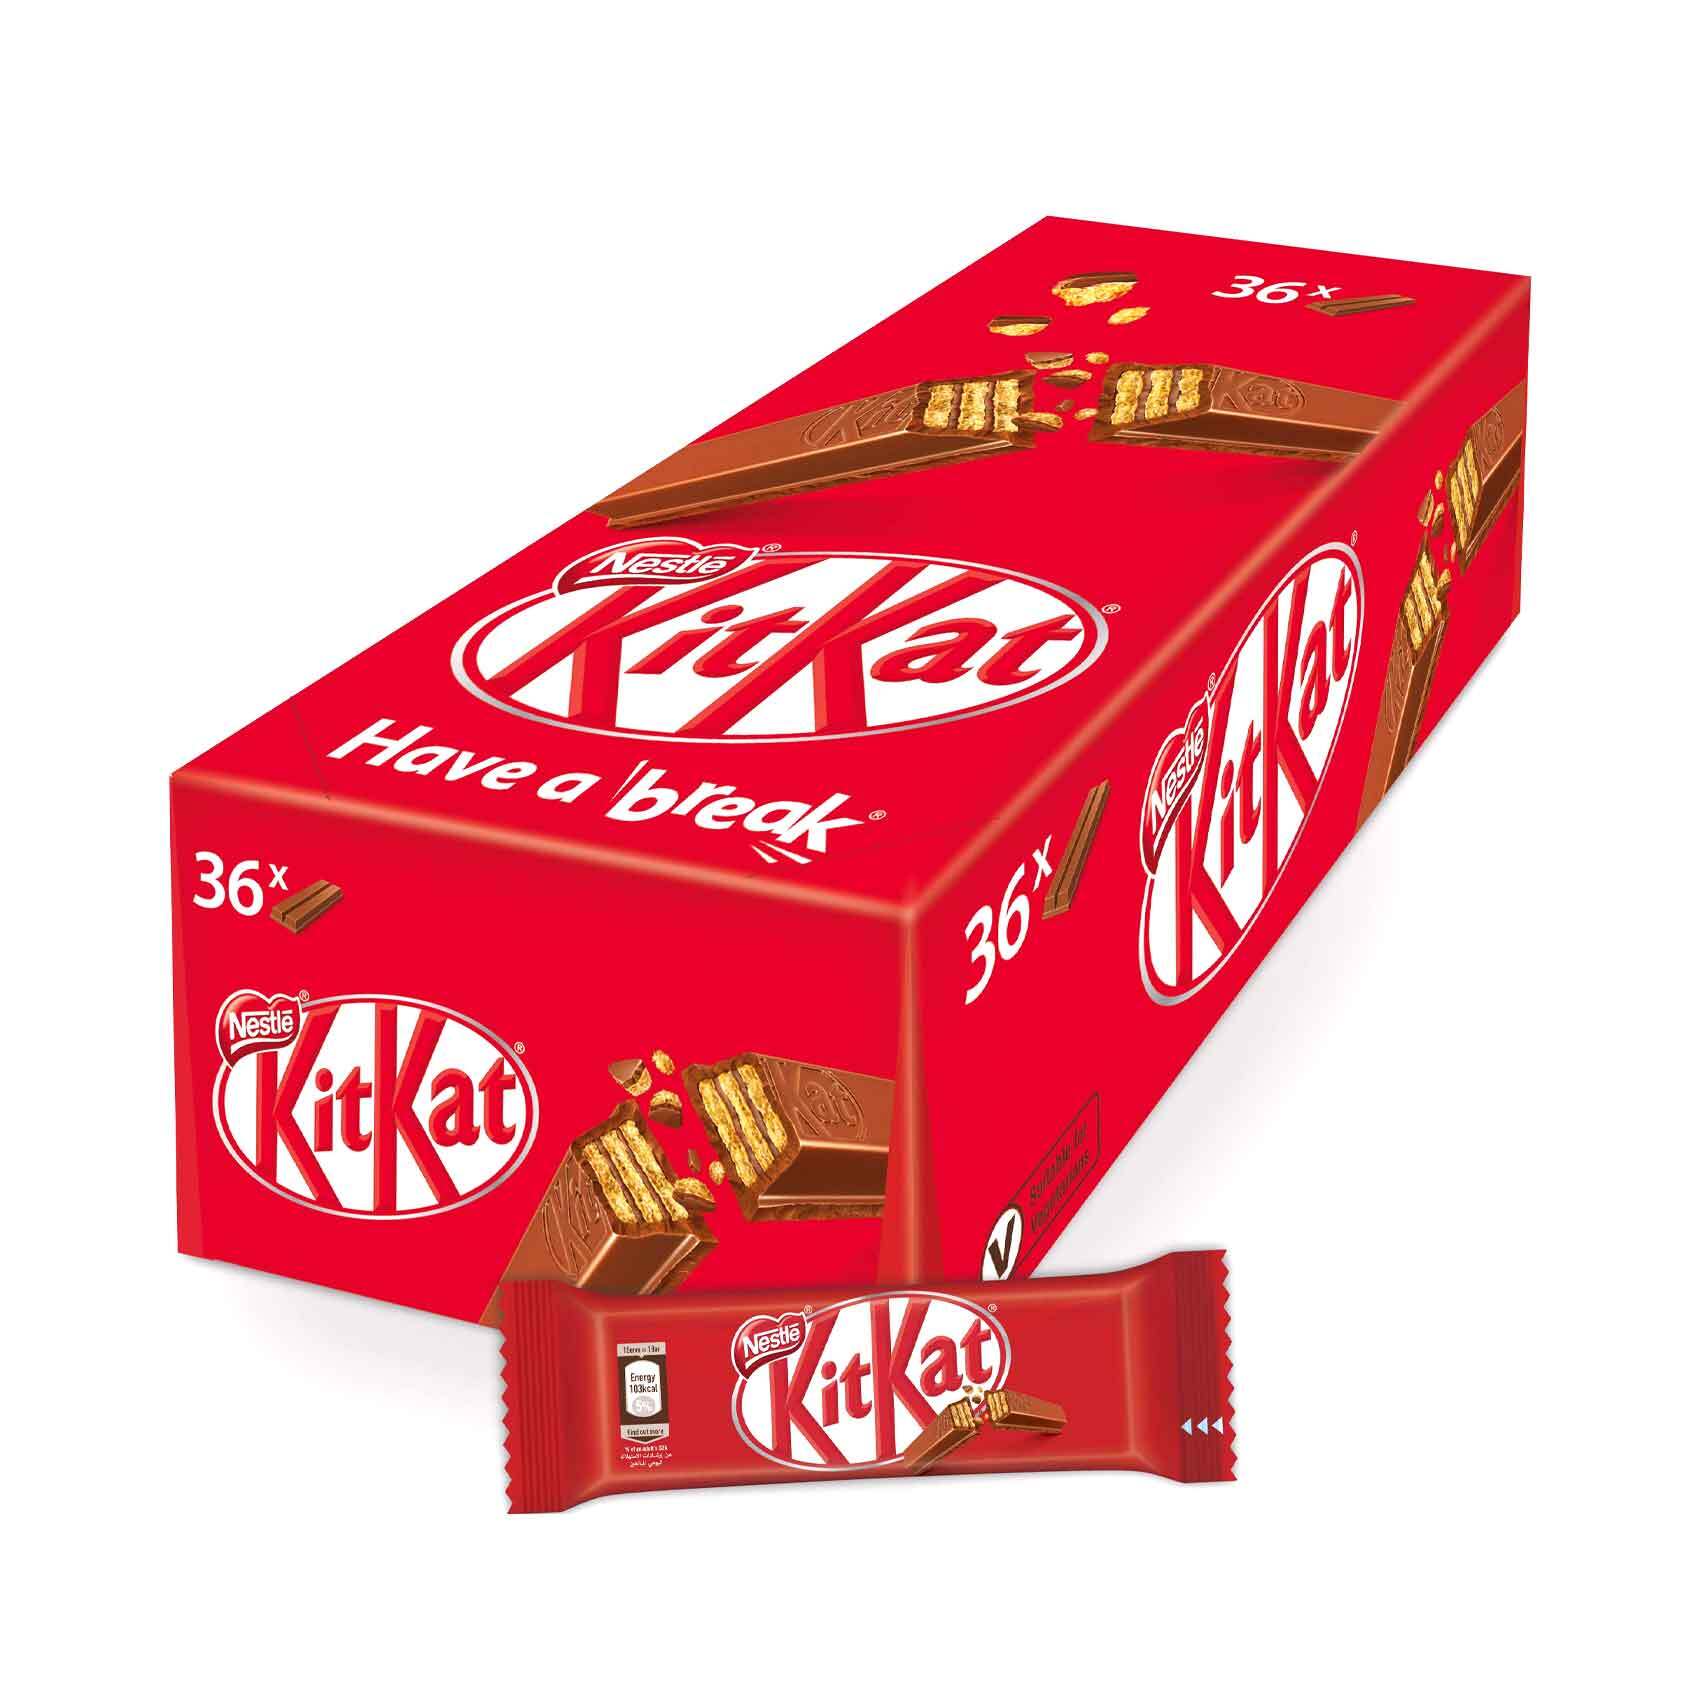 Buy Nestle Kit Kat Bites Wafer Fingers in Milk Chocolate 200g